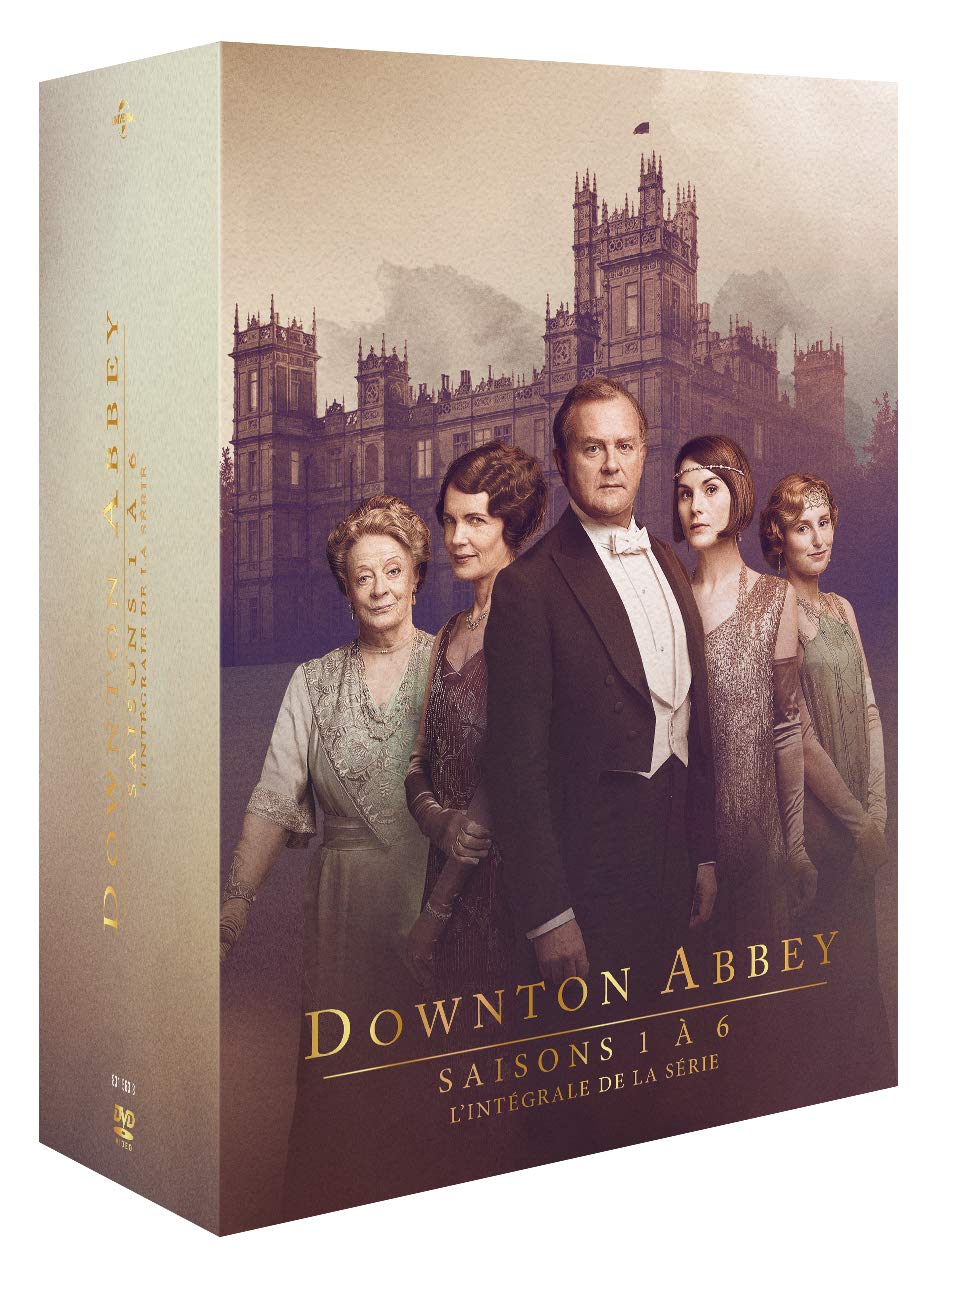 Dvd Downton Abbey - Collezione Completa (24 Dvd) NUOVO SIGILLATO, EDIZIONE DEL 11/02/2020 SUBITO DISPONIBILE